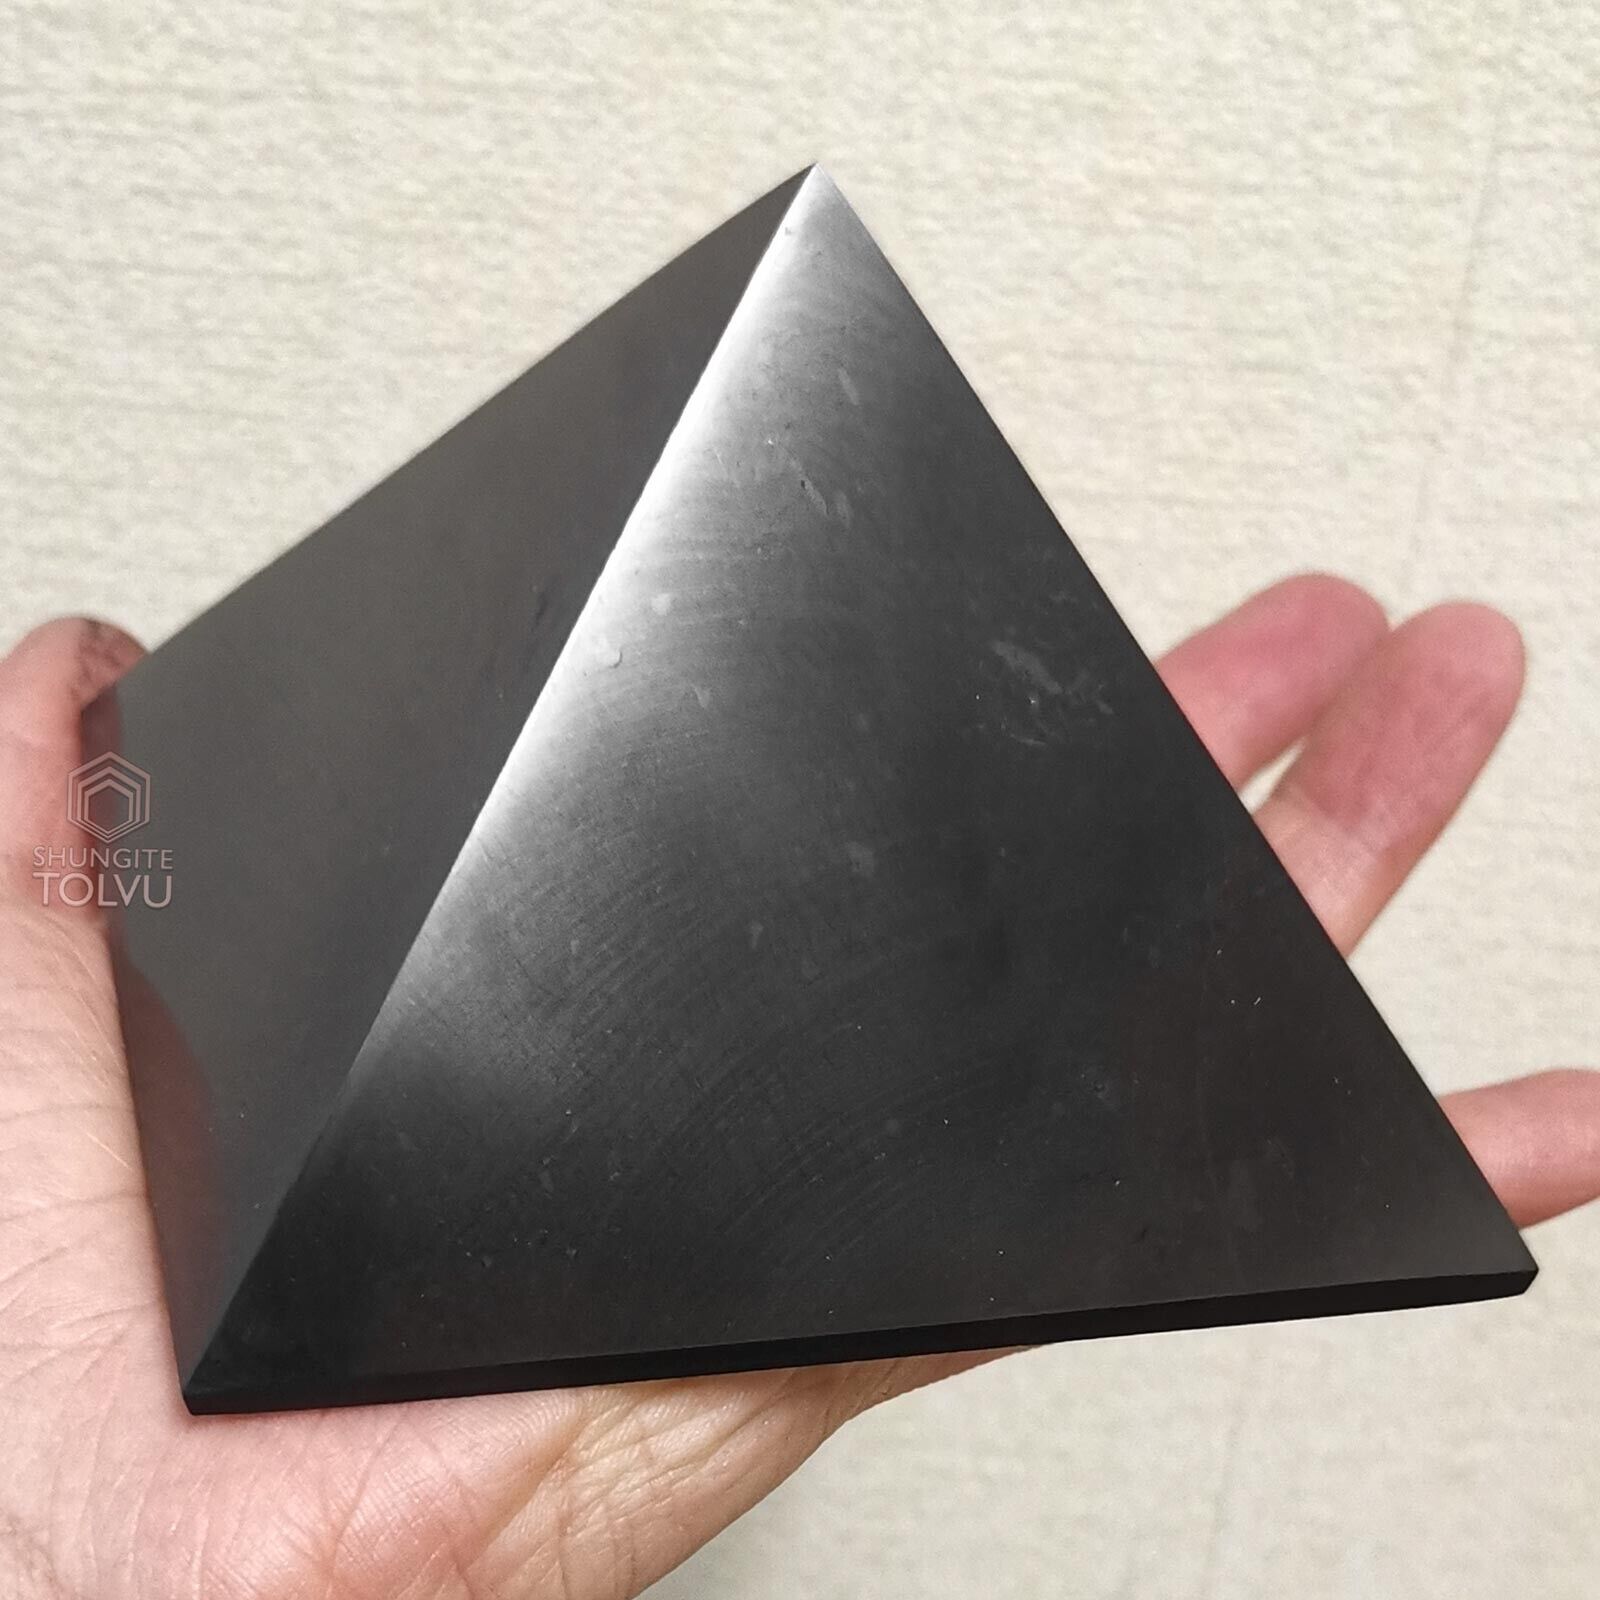 Big Shungite Pyramid 4 inches Polished surface Authentic shungite stone, Tolvu